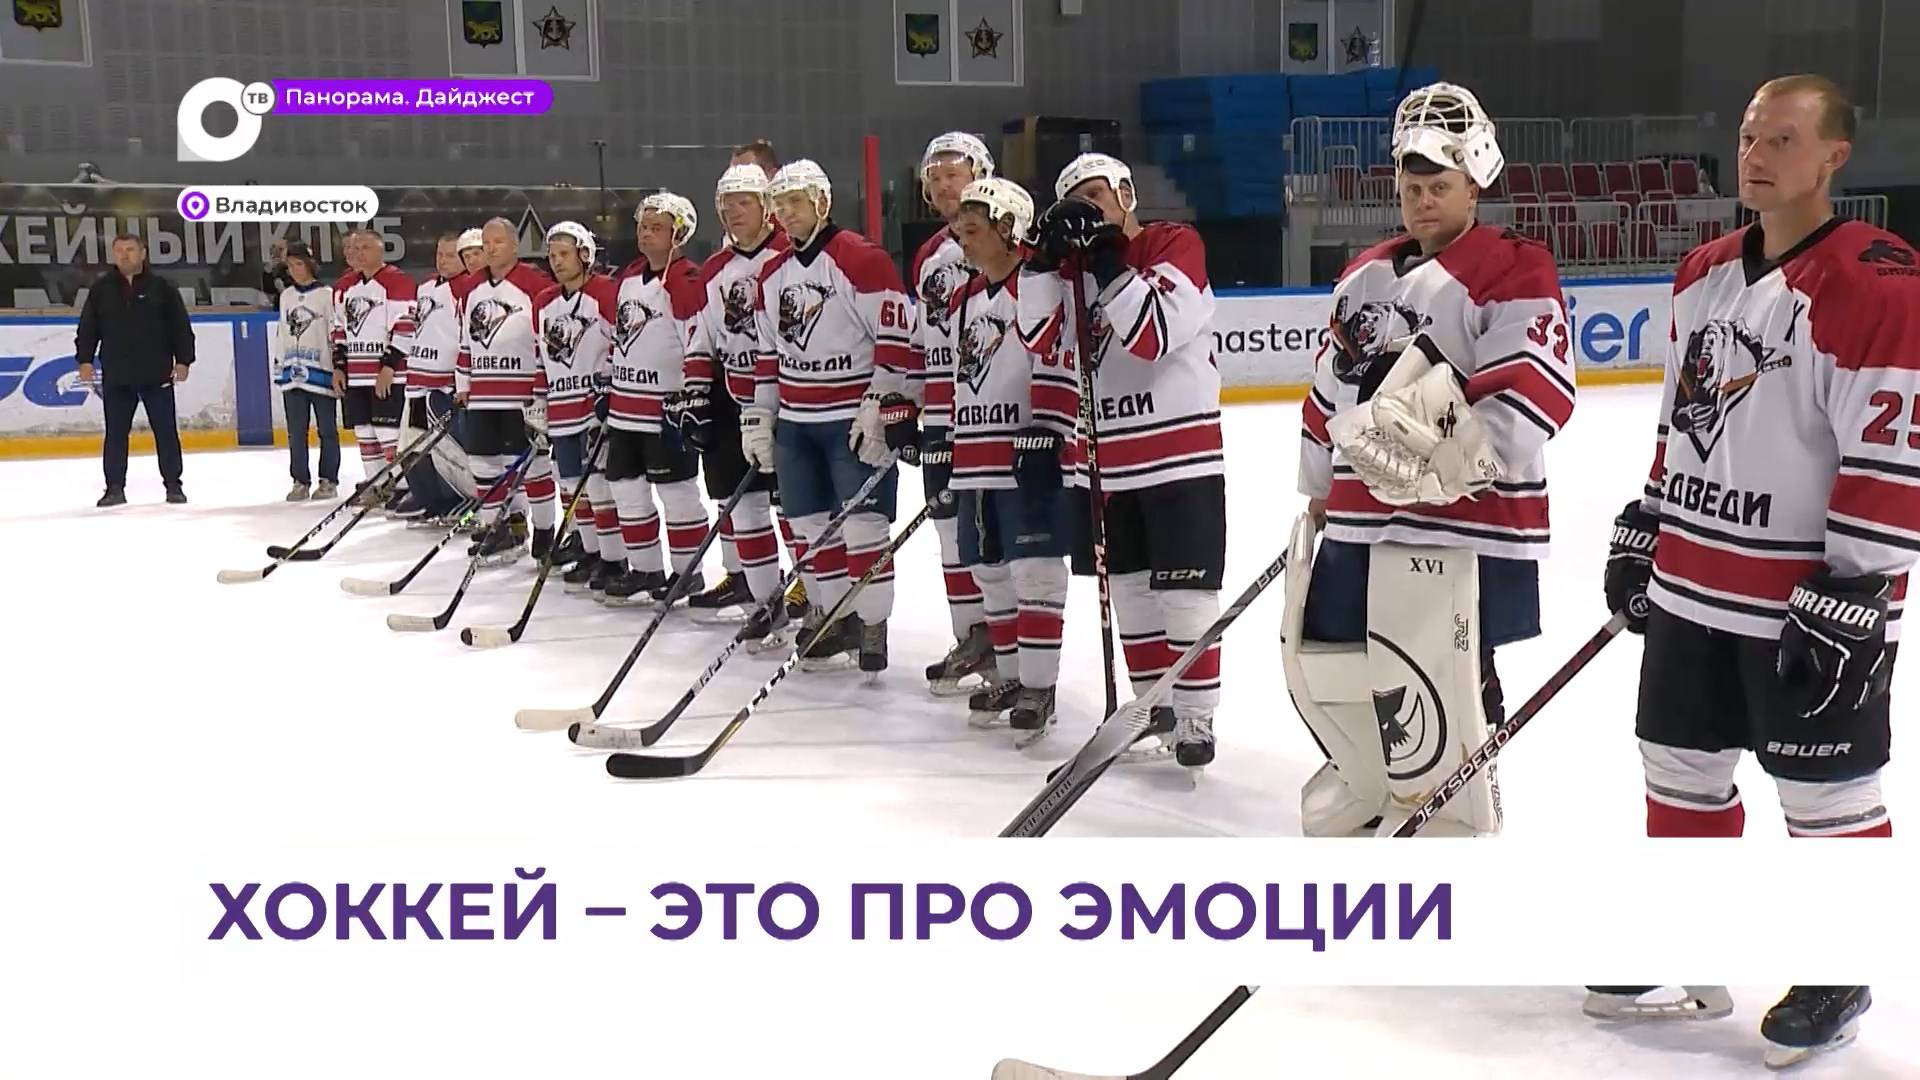 Во Владивостоке на льду «Фетисов арены» в битве за Кубок губернатора сошлись шесть команд